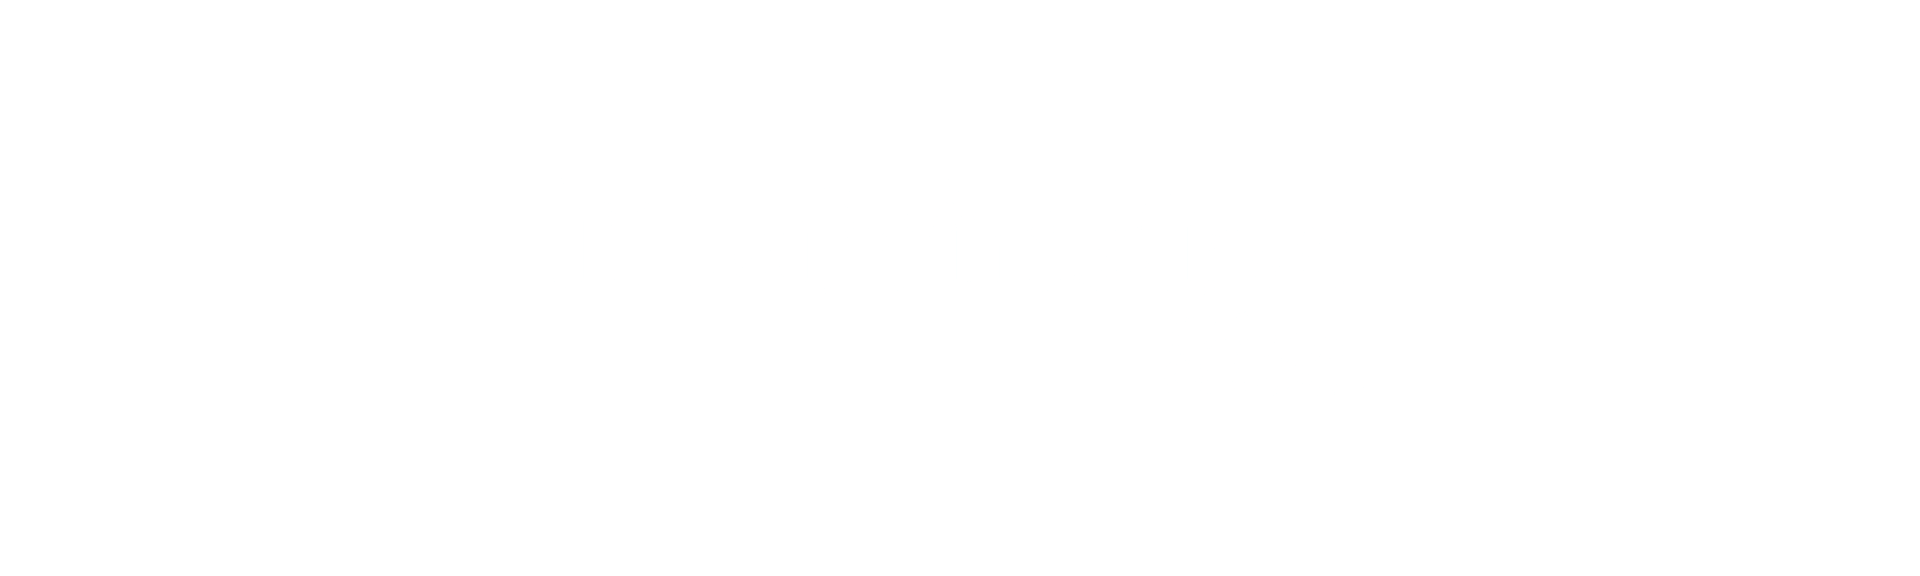 Mahindra Group Logo